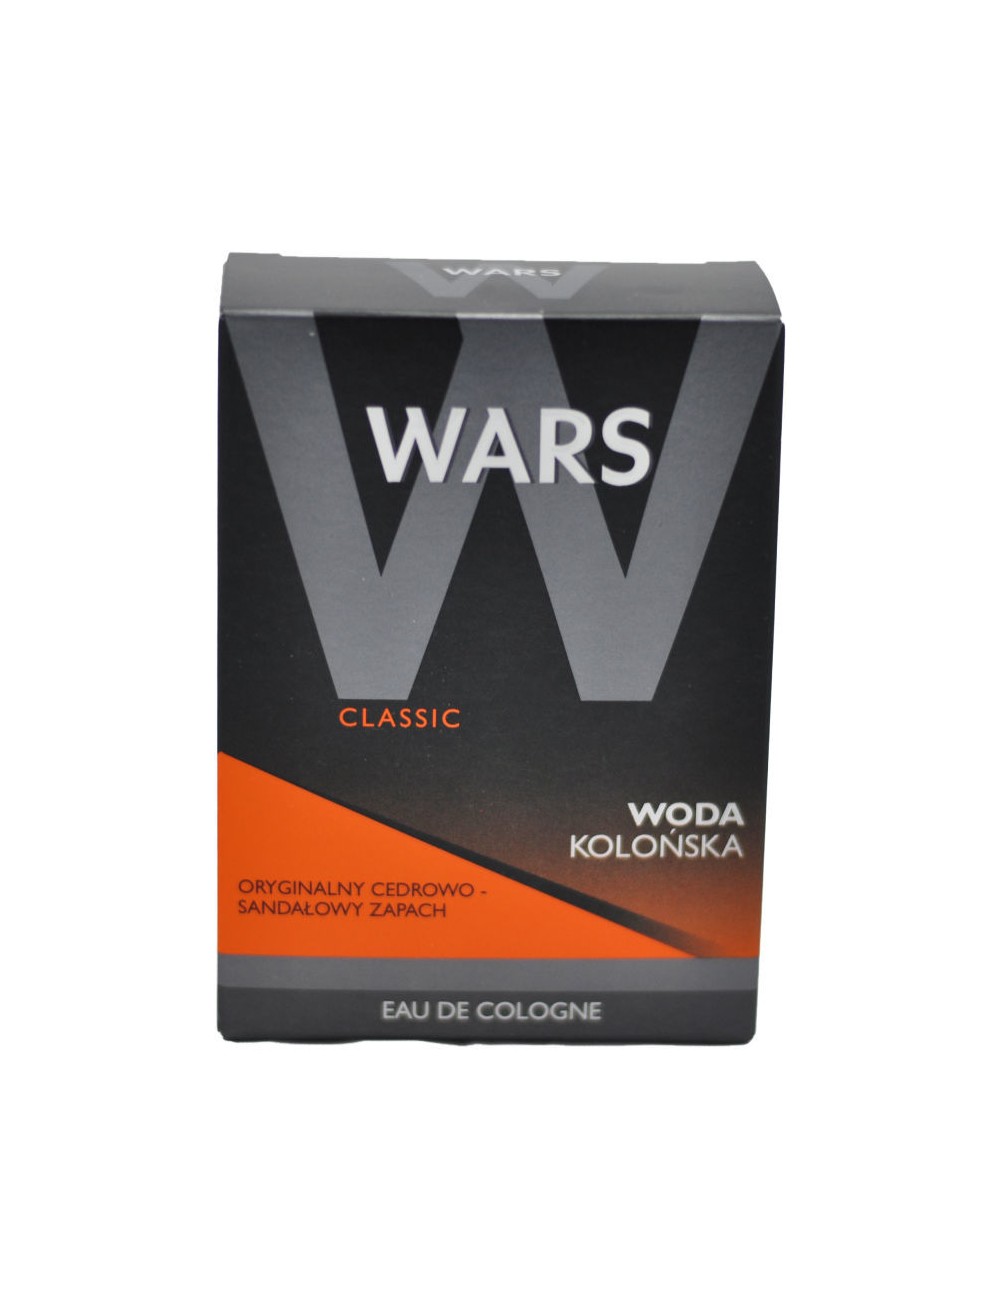 Wars Classic 90ml – woda kolońska o zapachu cedrowo-sandałowym